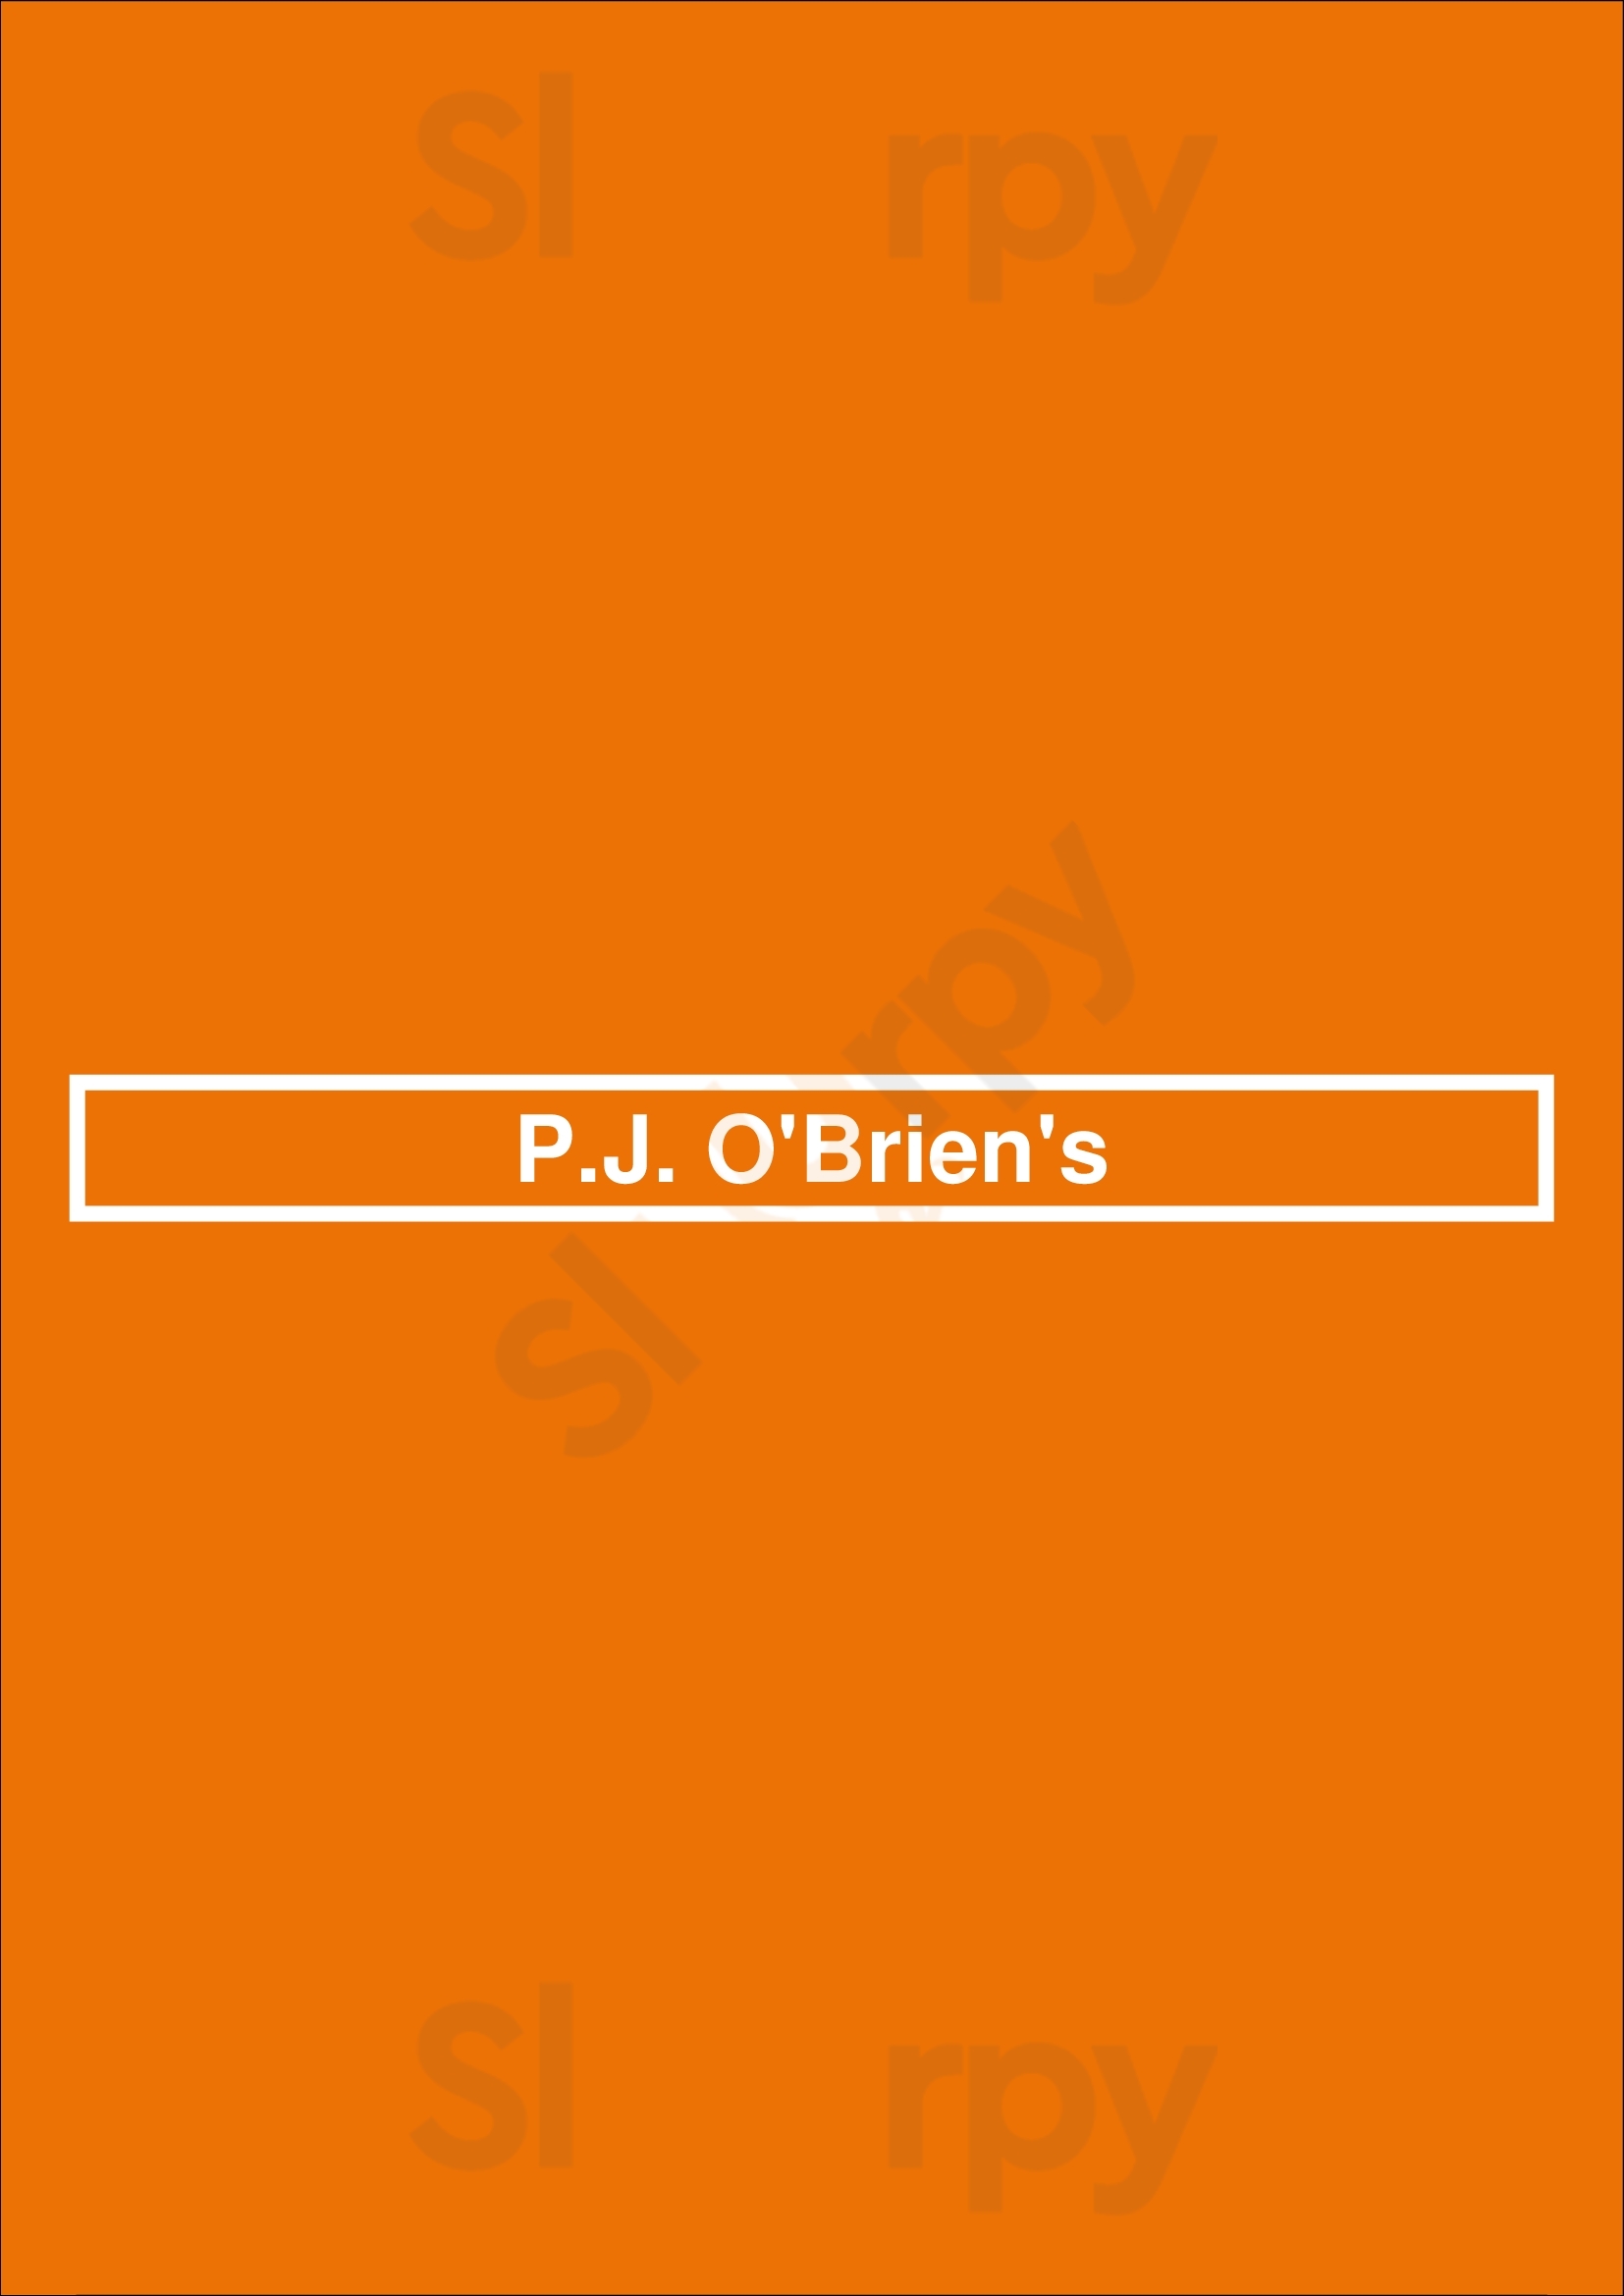 P.j.o'brien's Irish Pub Melbourne Menu - 1